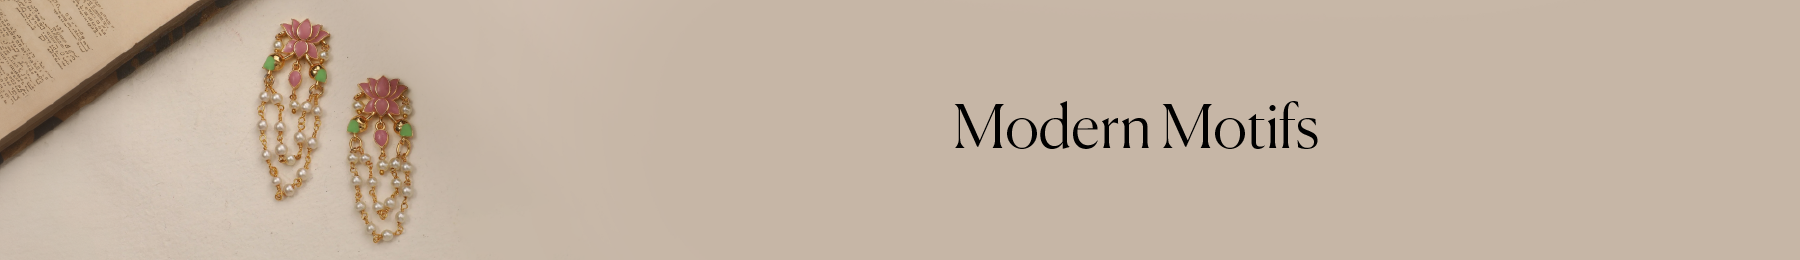 Modern Motifs